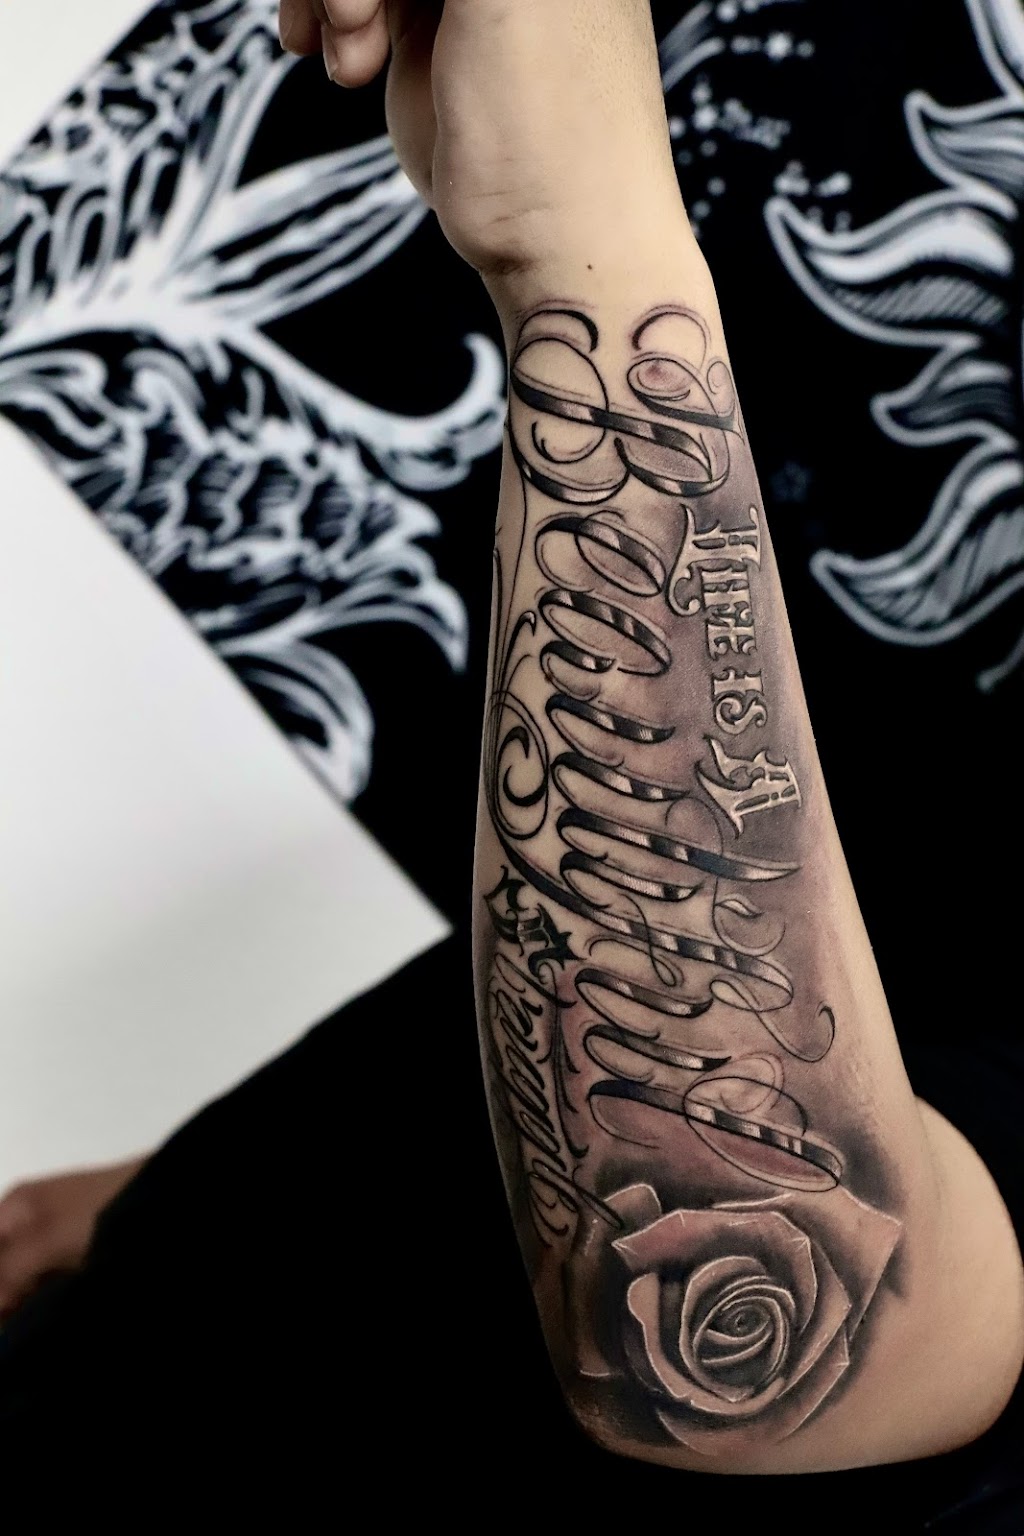 Kid Ink Talks About His Tattoo Regrets